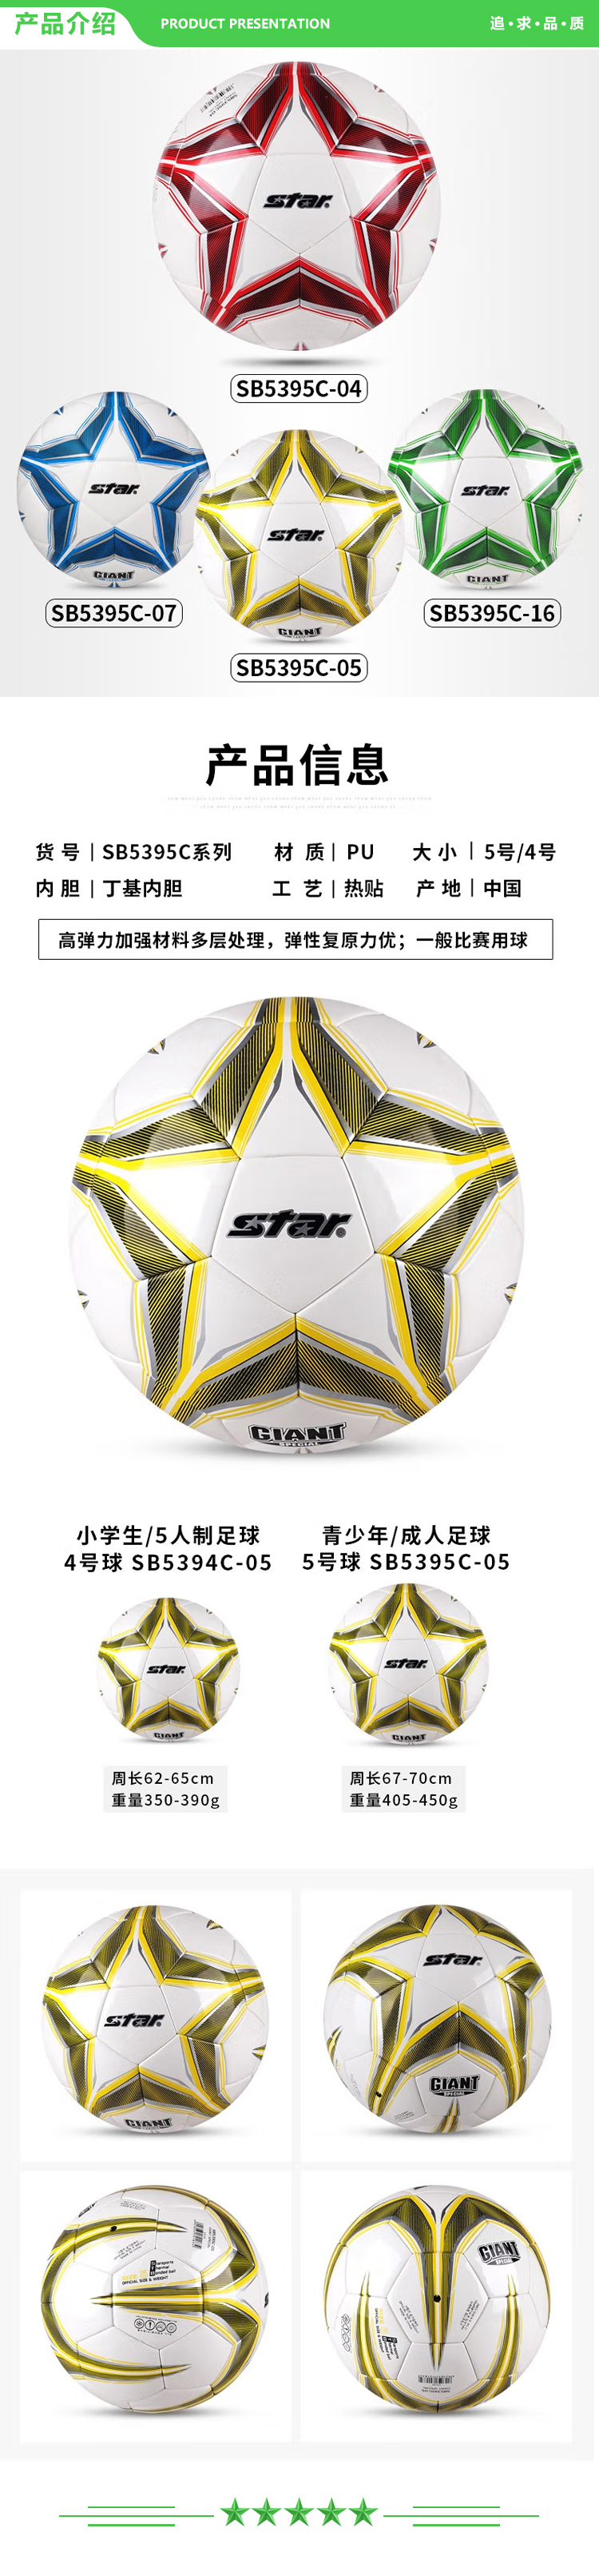 世达 star SB5394C-05（4号青少年用球）足球 成人5号比赛训练用球成人青少年学生耐磨热贴合足球.jpg